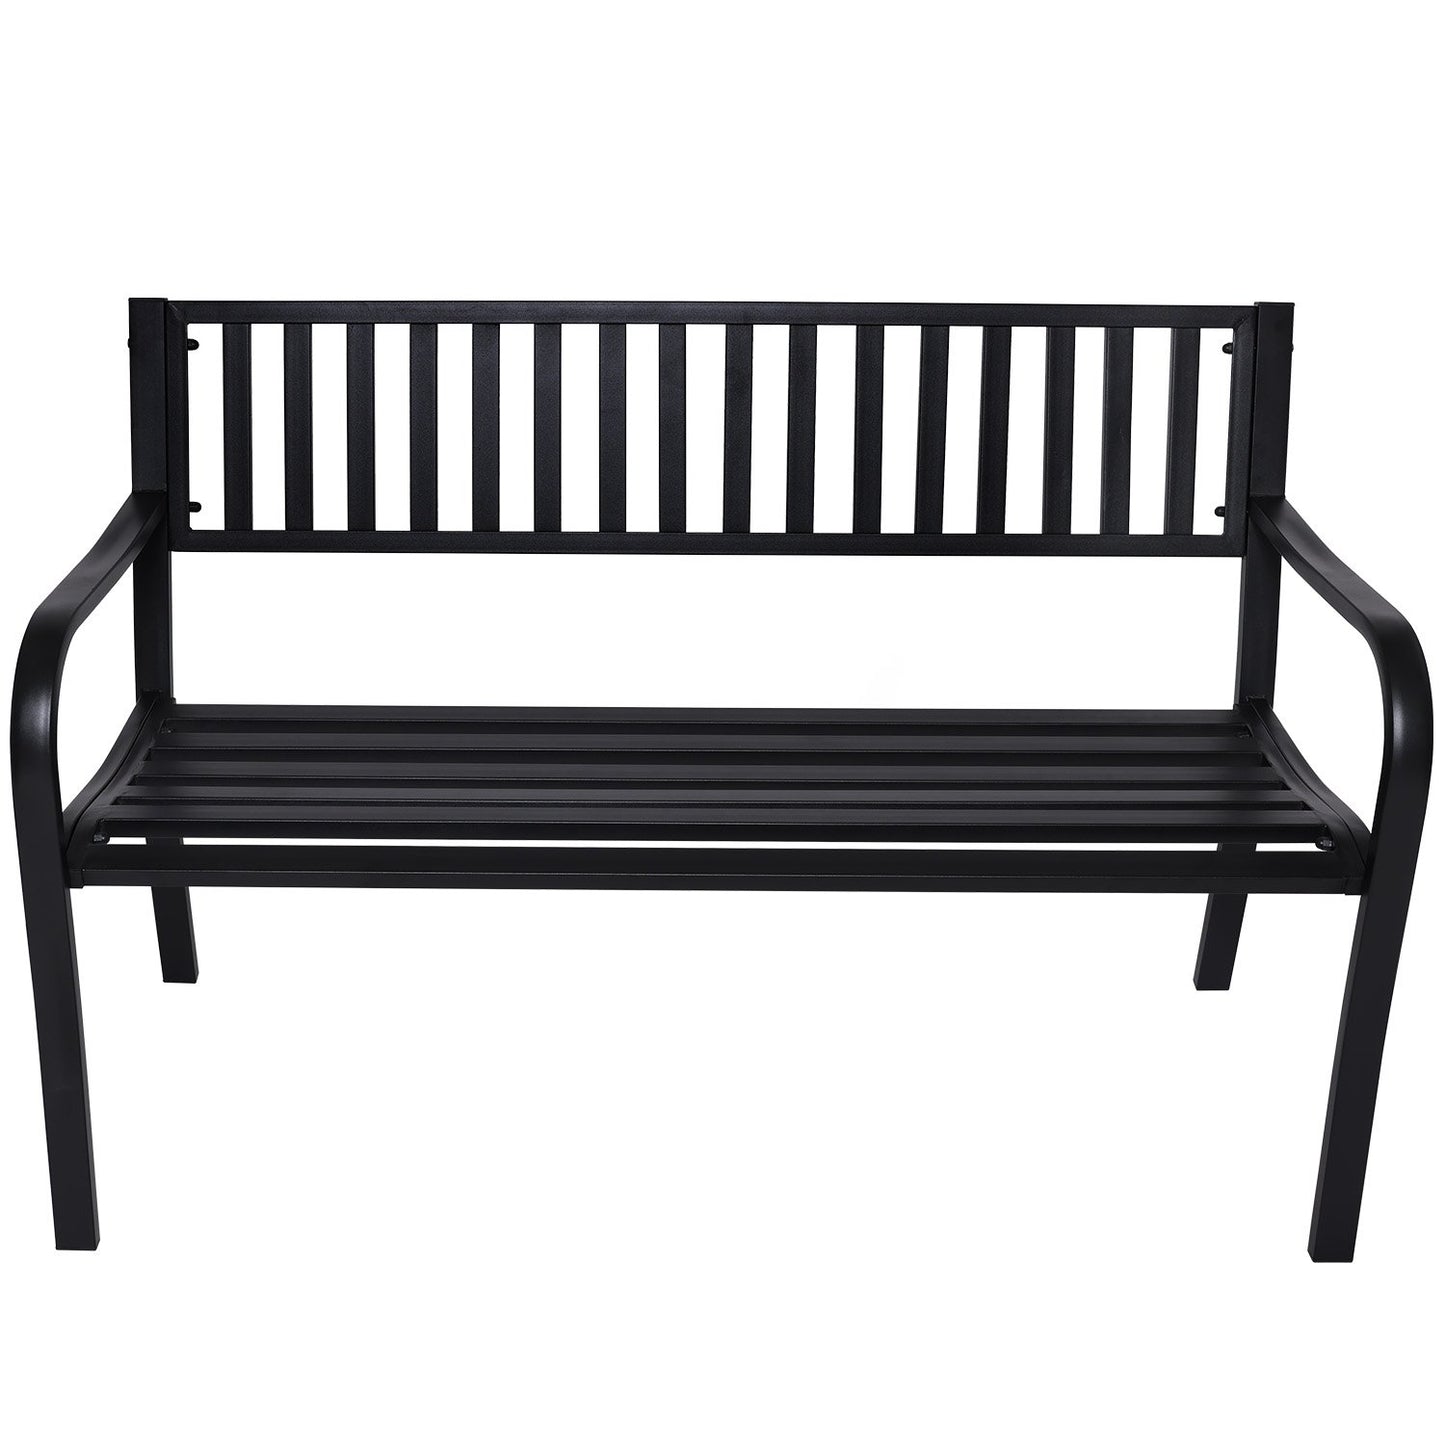 Outdoor Bench Seat Wallaroo Steel Metal Garden Black - Modern Design